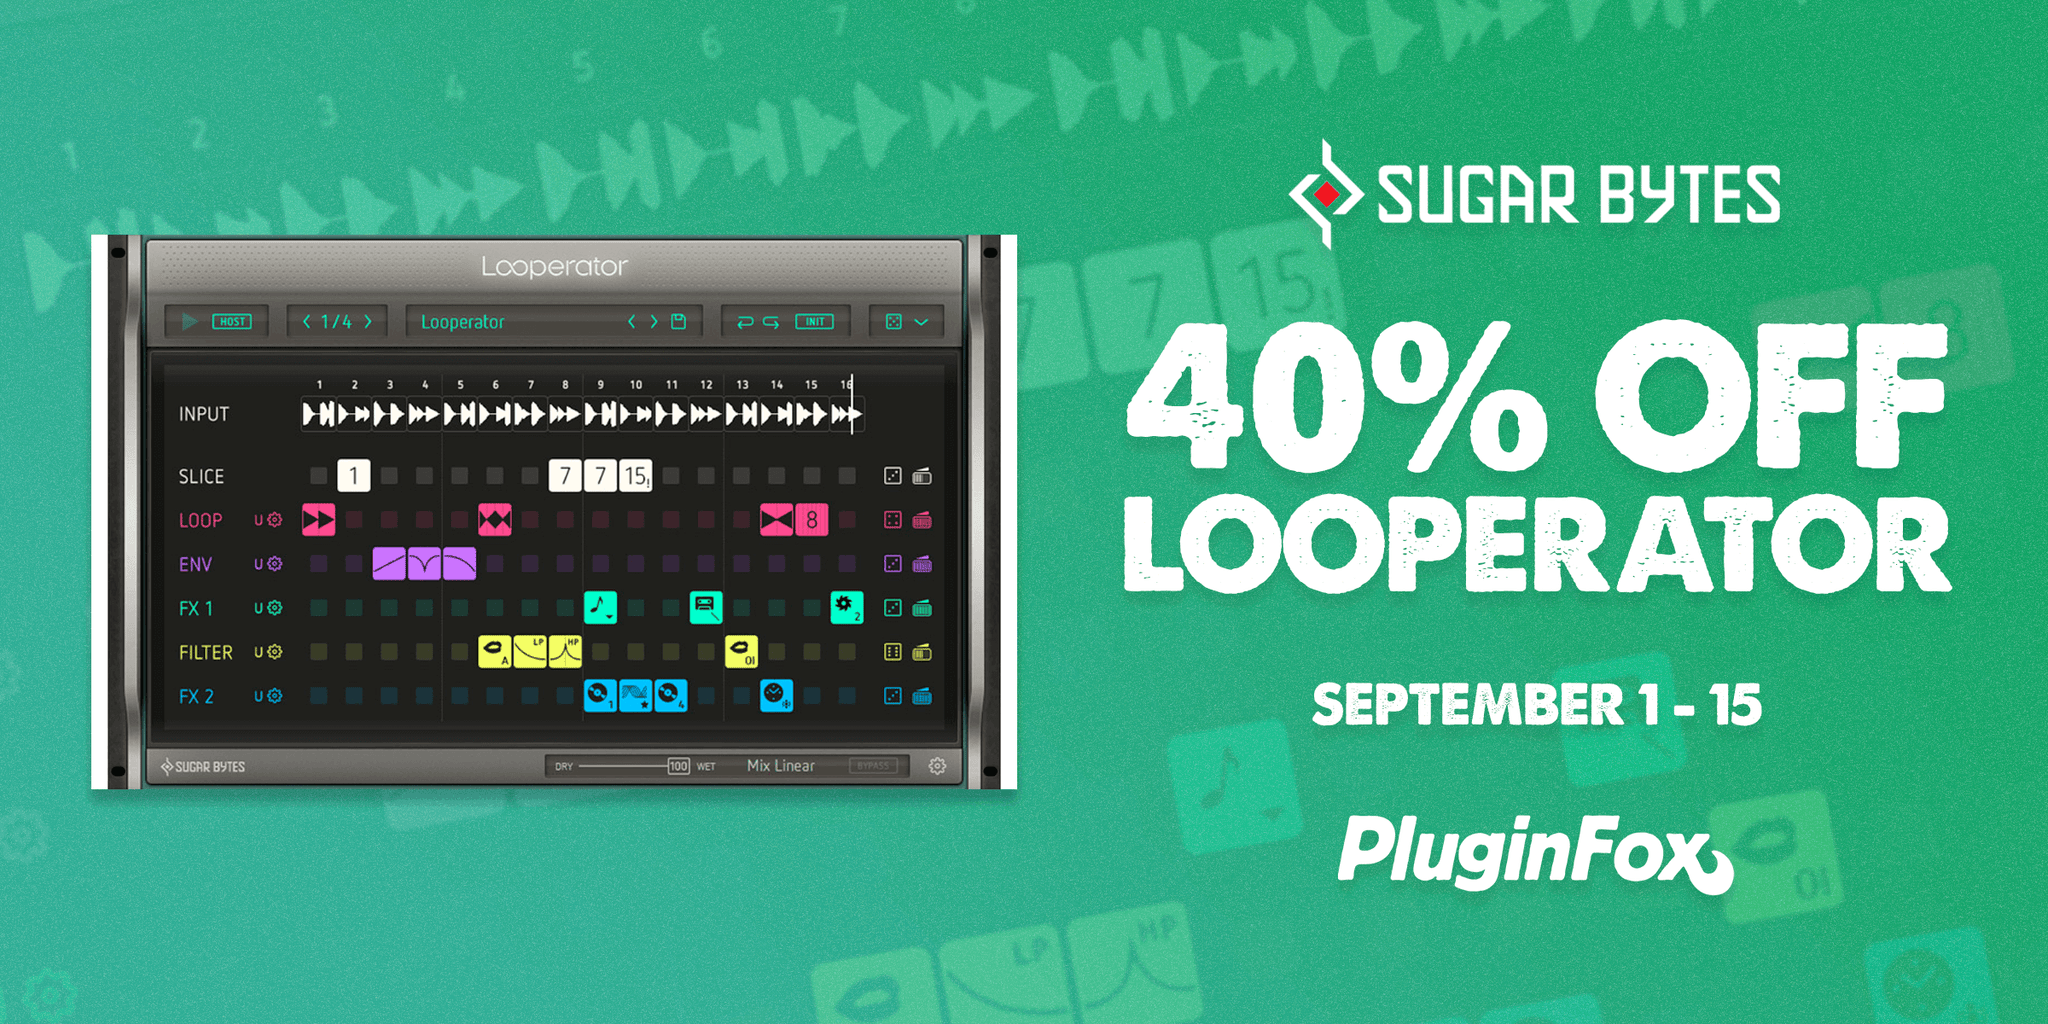 Sugar Bytes Looperator Sale - Sept 1-15